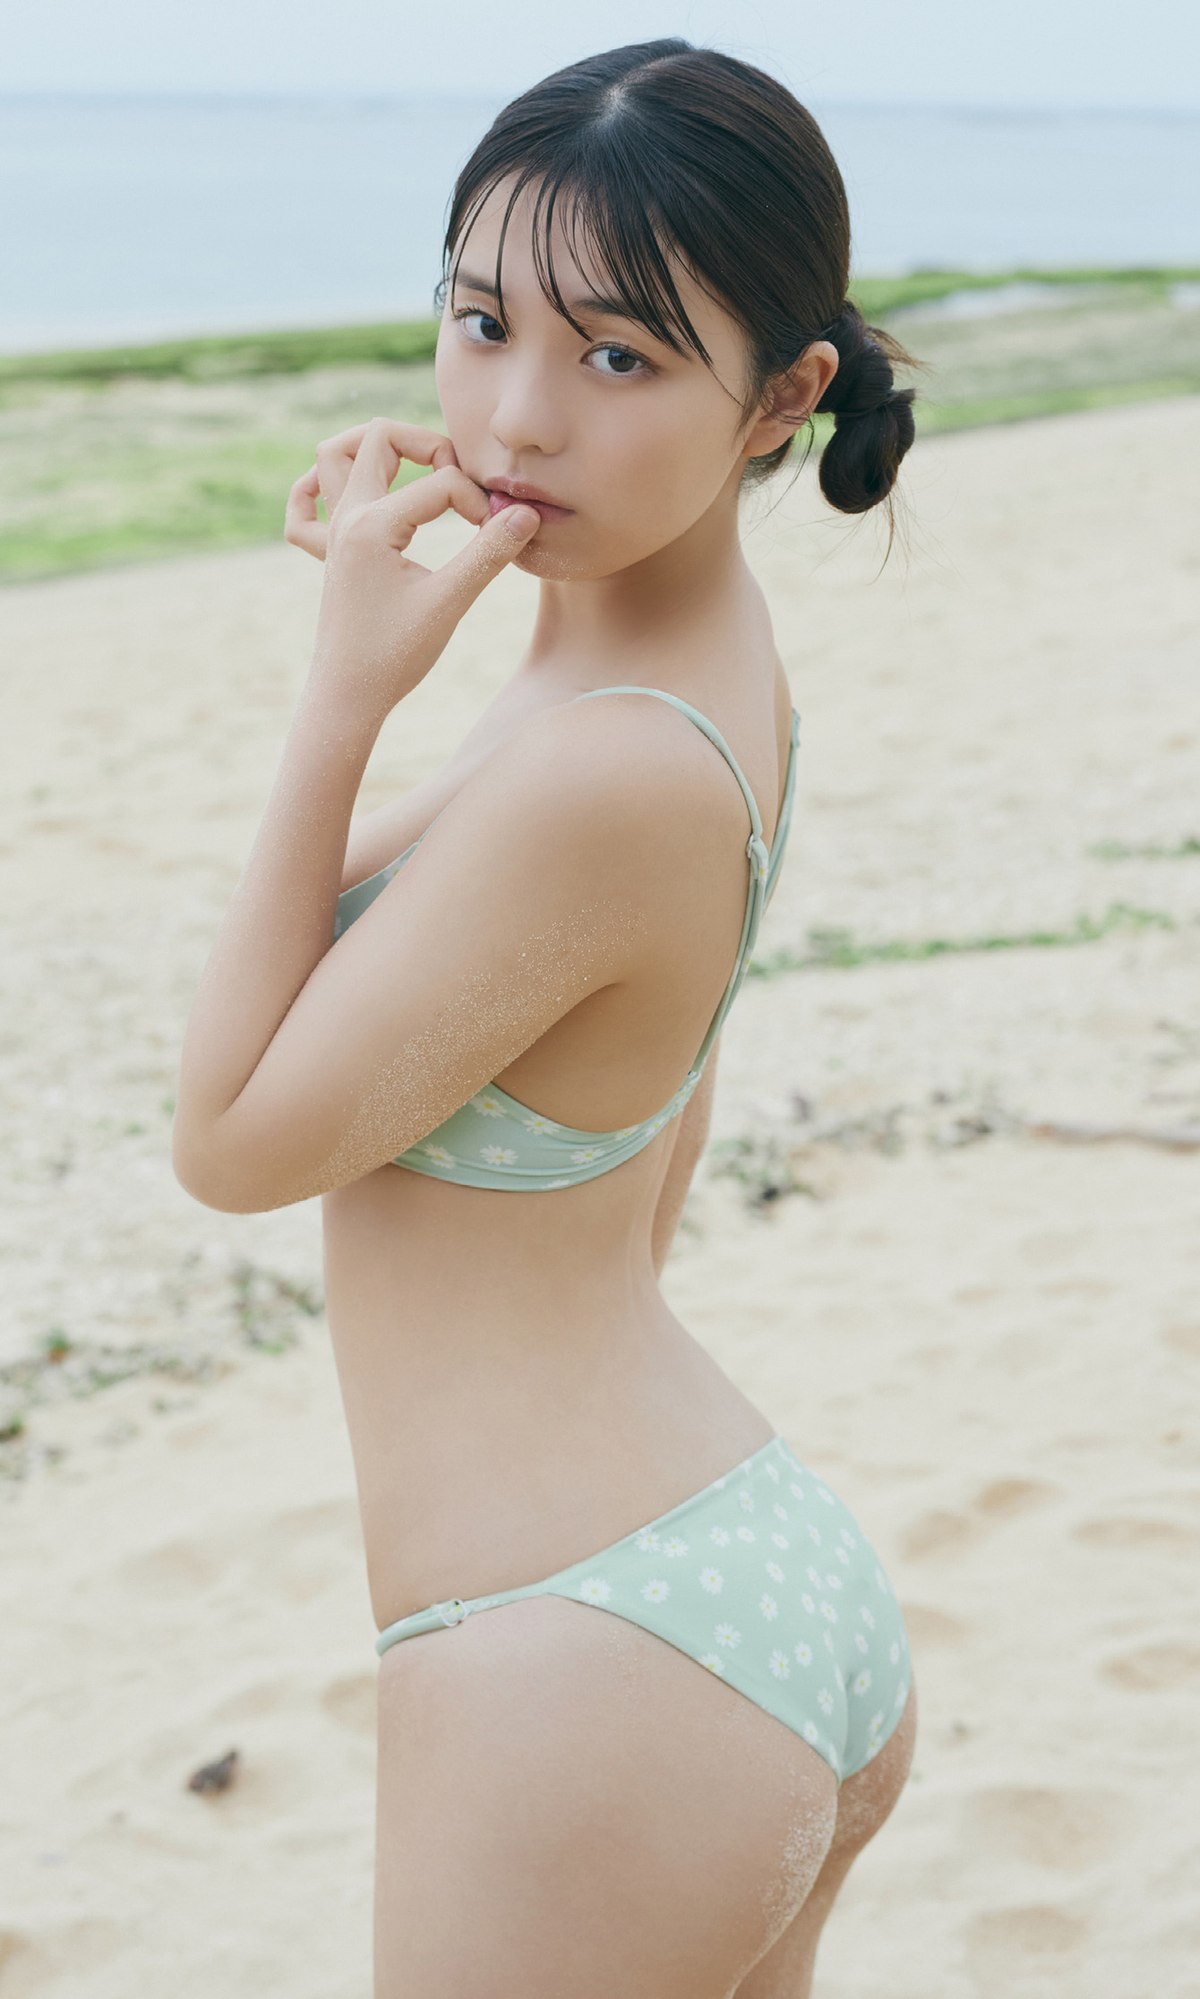 Weekly Photobook 2023 08 07 Hina Kikuchi 菊地姫奈 Enjoy 18 Year Old Summer Vacation 0063 1710218808.jpg